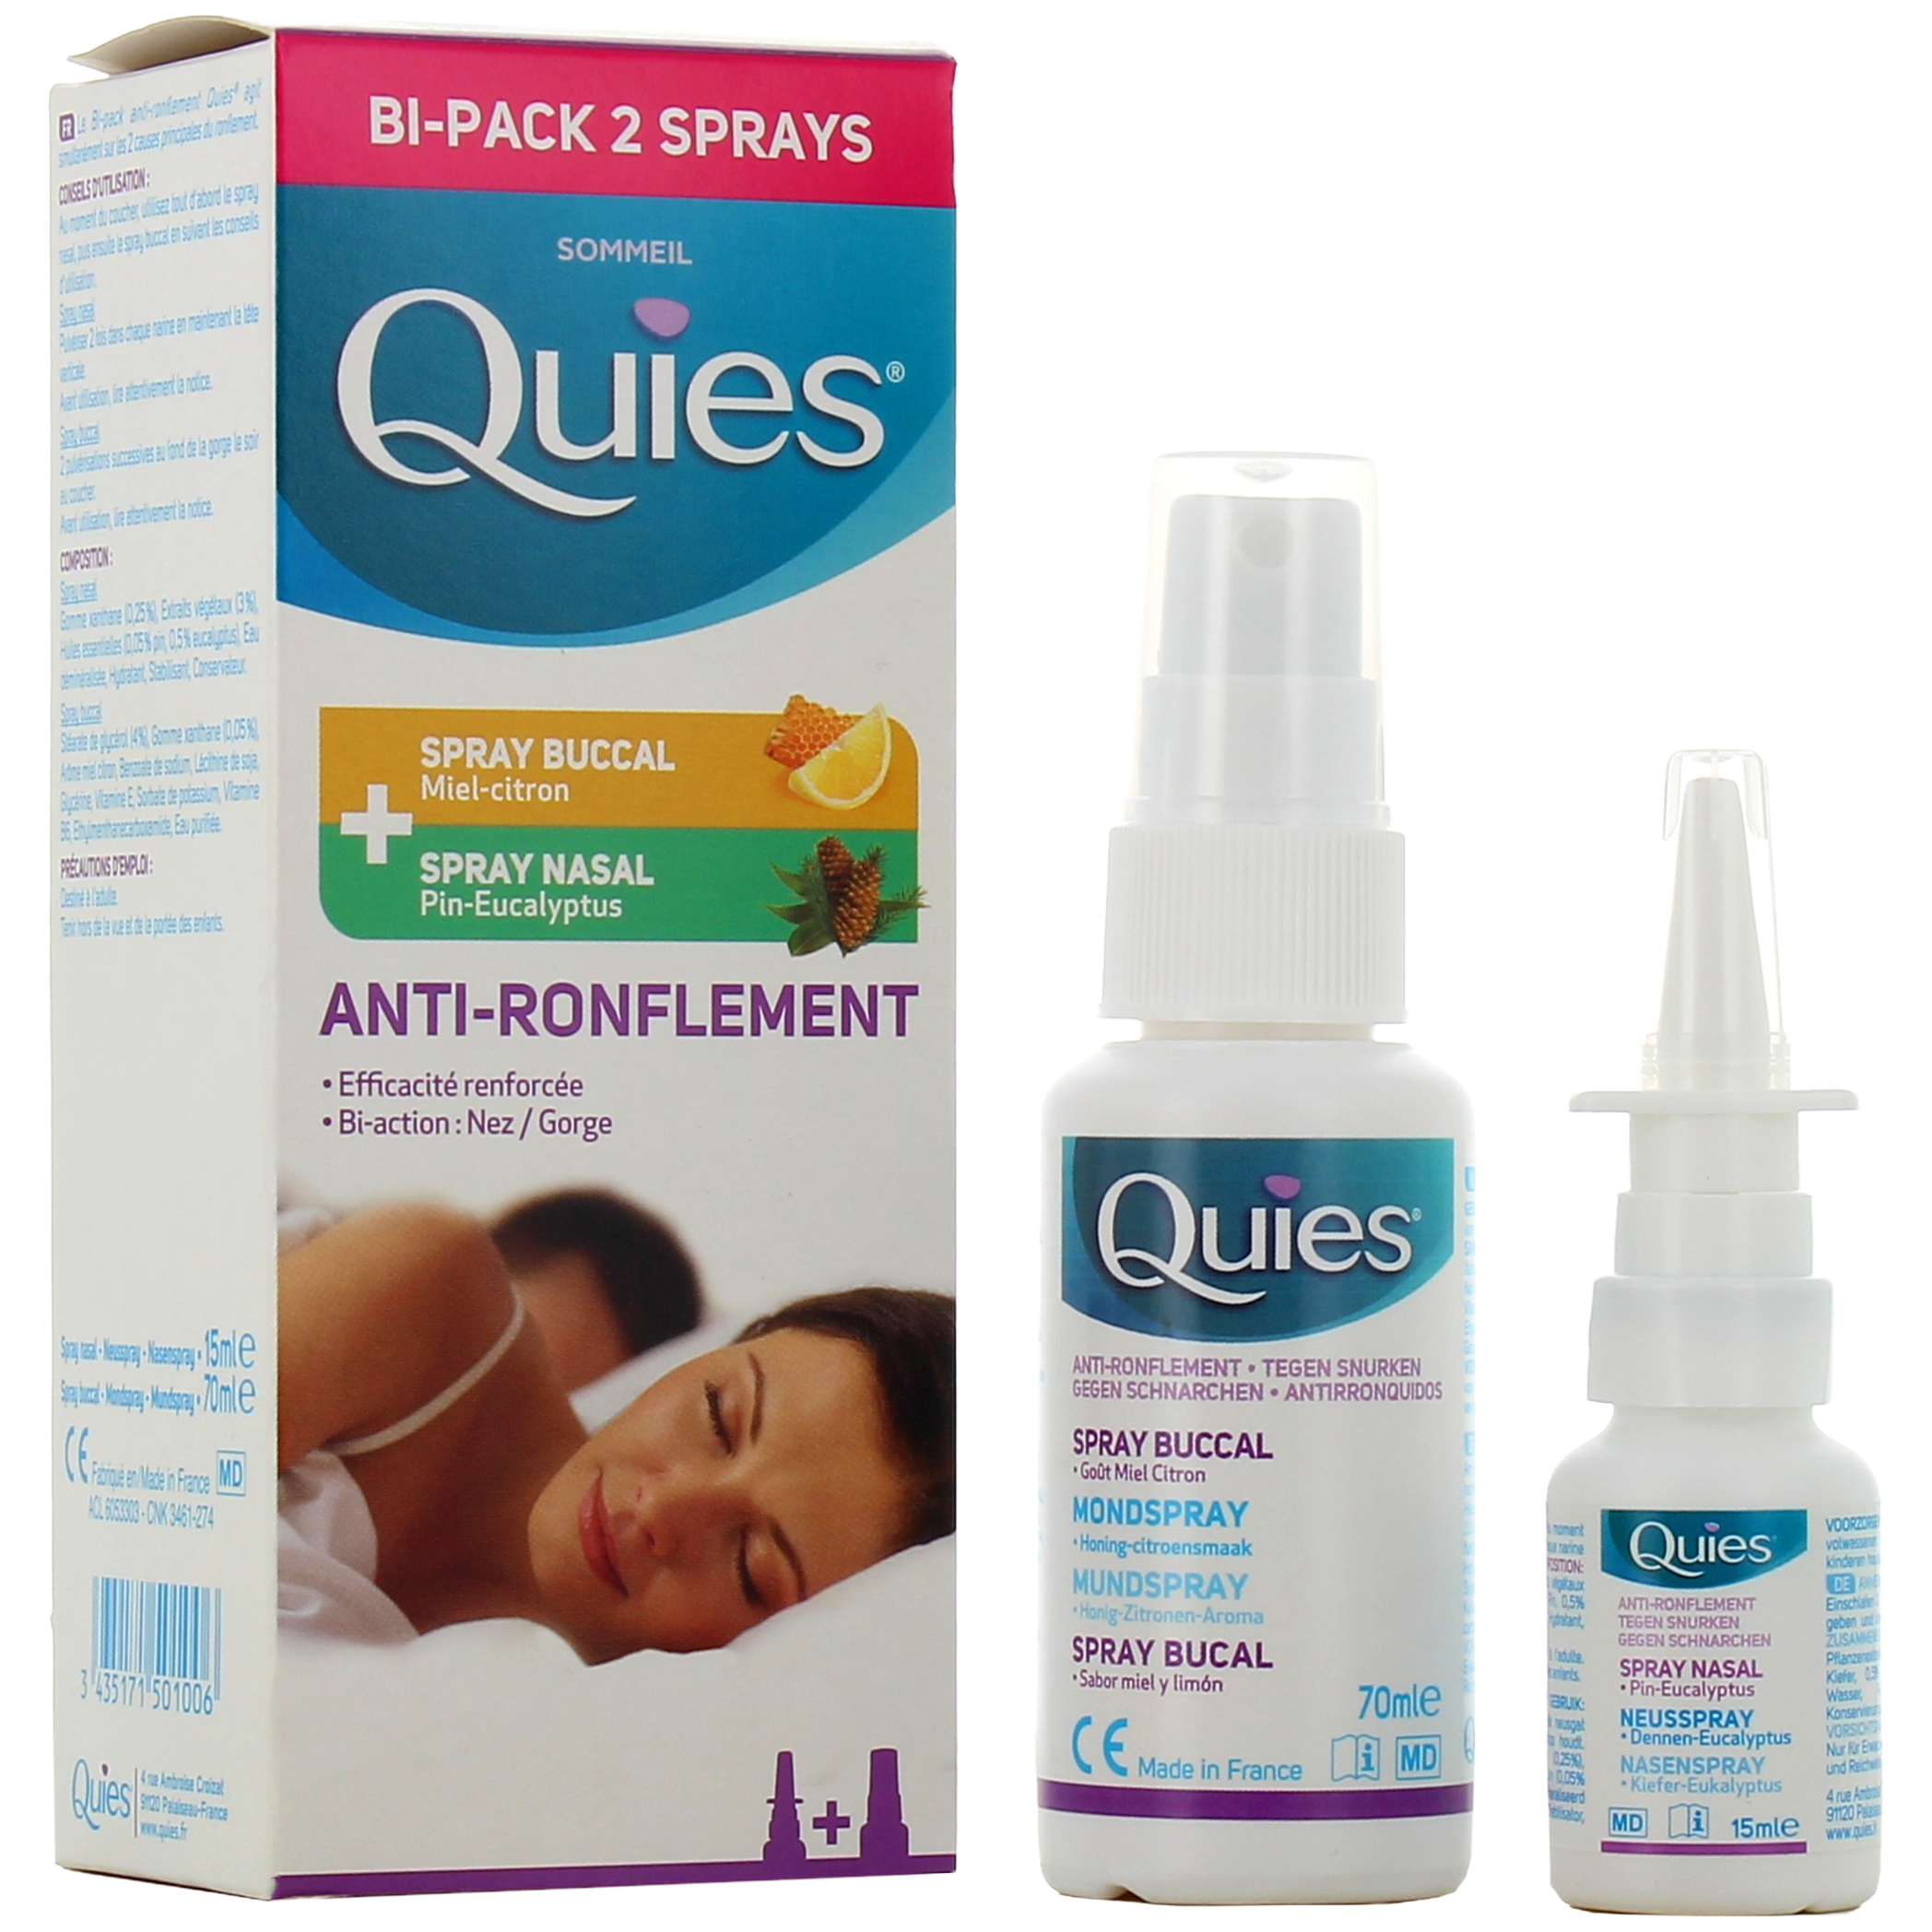 Quies Anti-ronflement Bi-Pack 2 Sprays